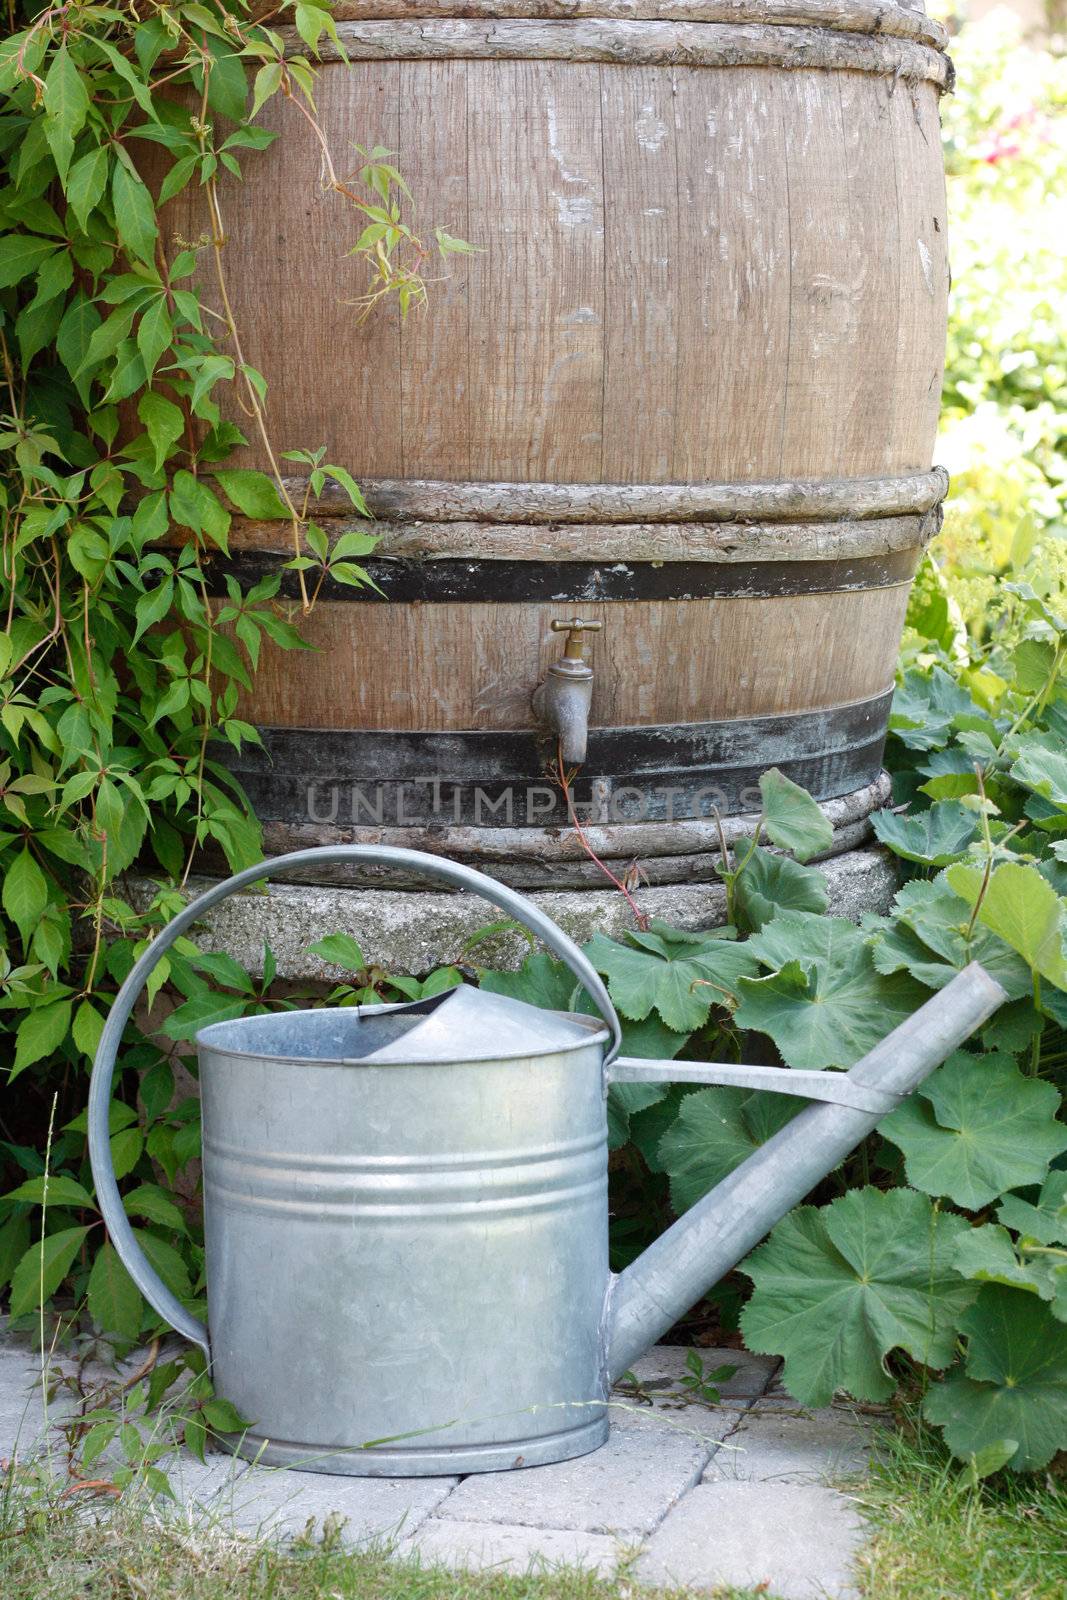 A water barrel outside in a garden